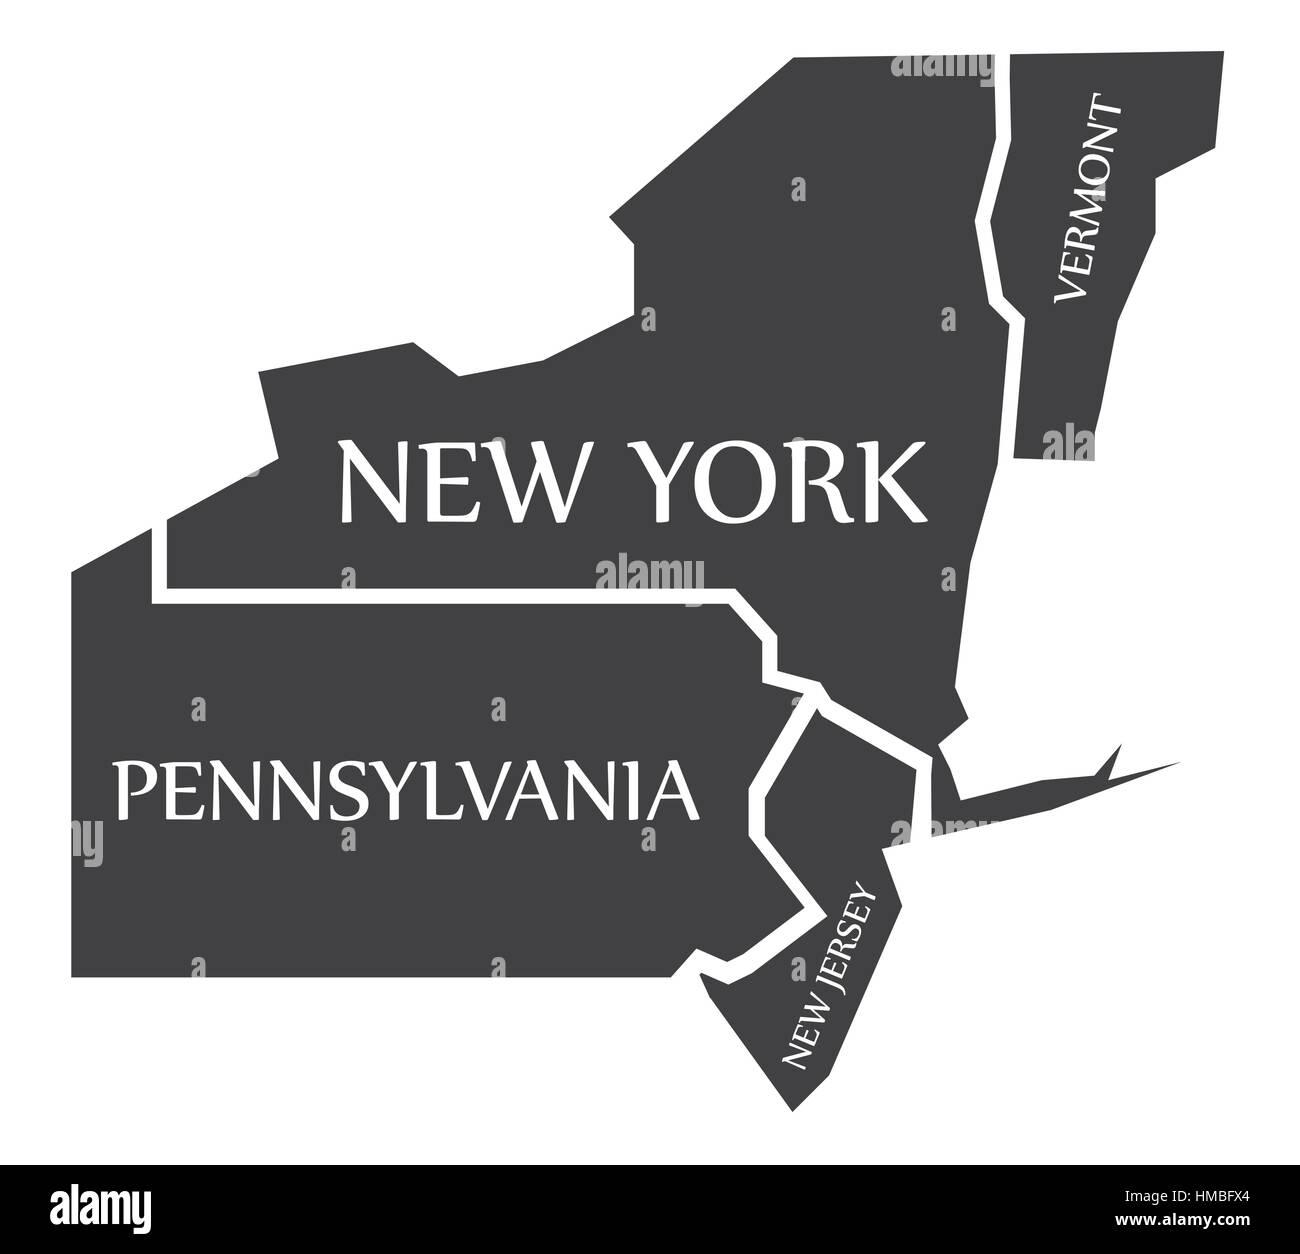 Vermont - New York - Pennsylvania - New Jersey Karte schwarz Abbildung gekennzeichnet Stock Vektor